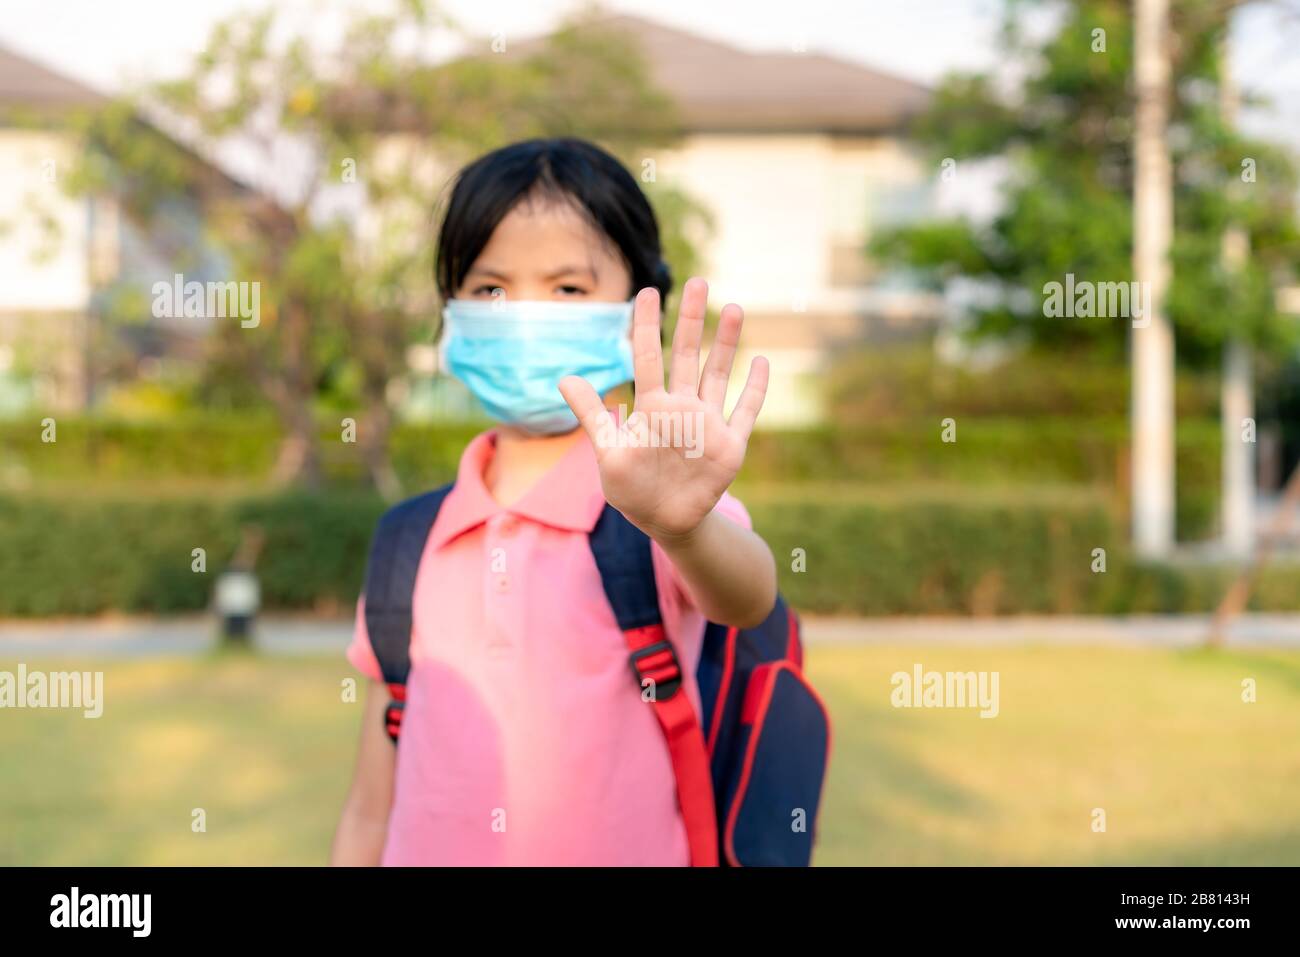 Covid-19 Coronavirus Epidemie Virus-Symptome und Luftverschmutzung pm2.5 Konzept.kleine asiatische Mädchen tragen Maske zum Schutz pm2,5 und zeigen Stopp-Hände gest Stockfoto